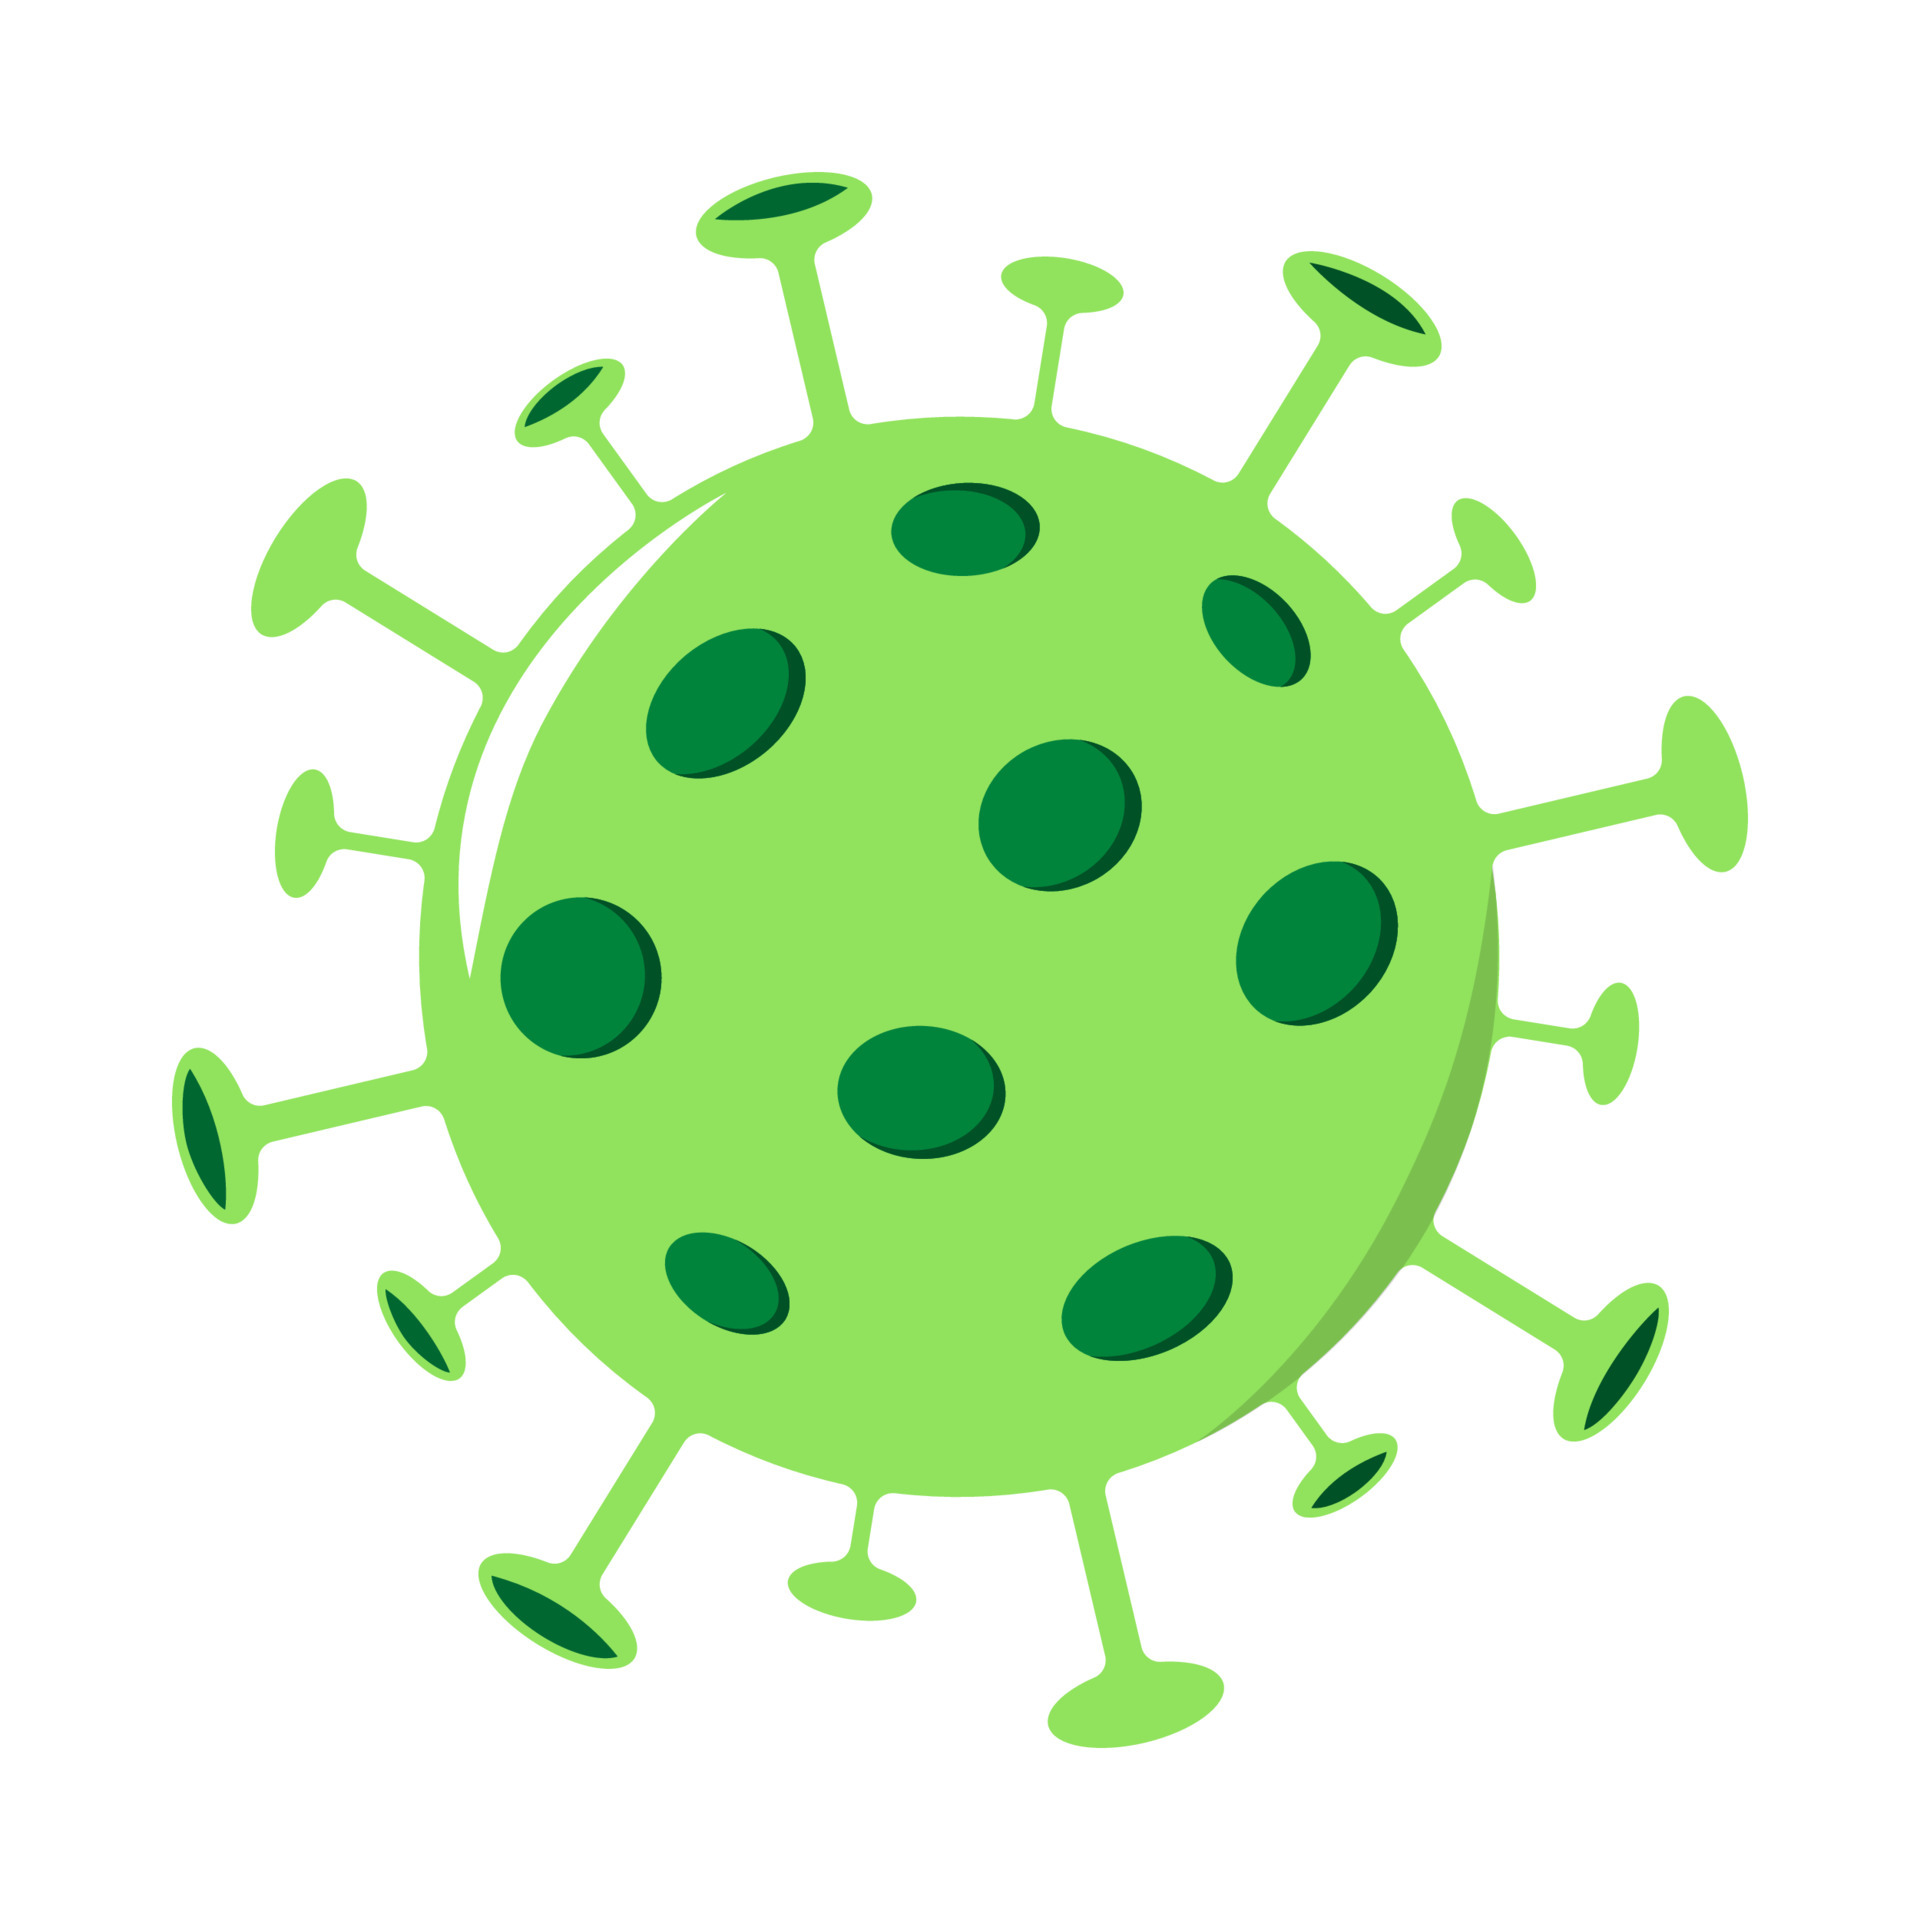 5573349-icone-coronavirus-vecteur-isole-covid-19-pictogramme-couleur-de-la-cellule-virus-sur-fond-blanc-vectoriel